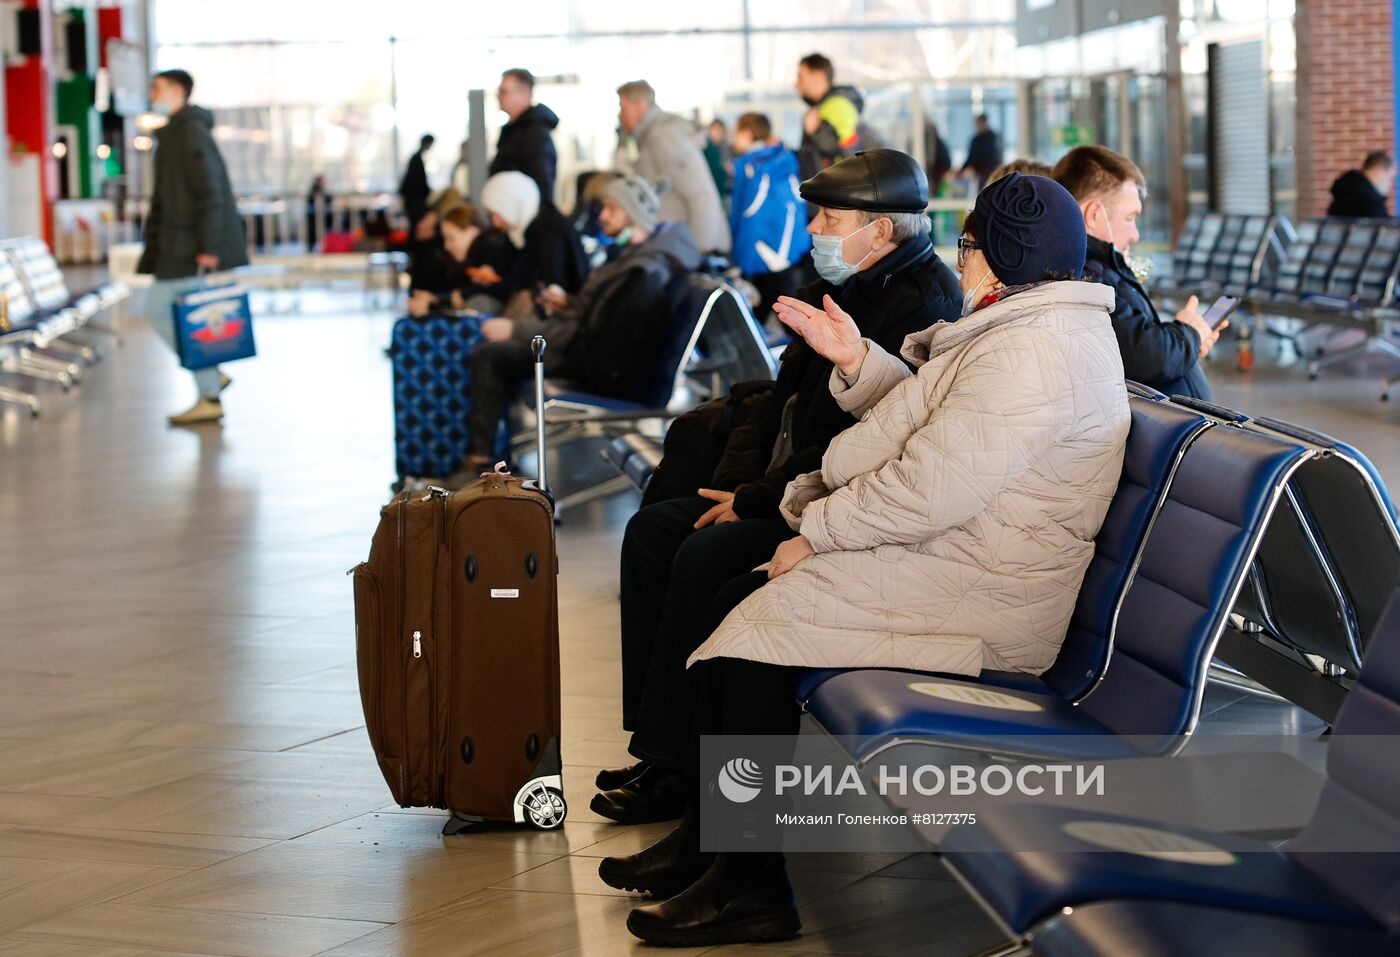 Работа аэропорта в Калининграде